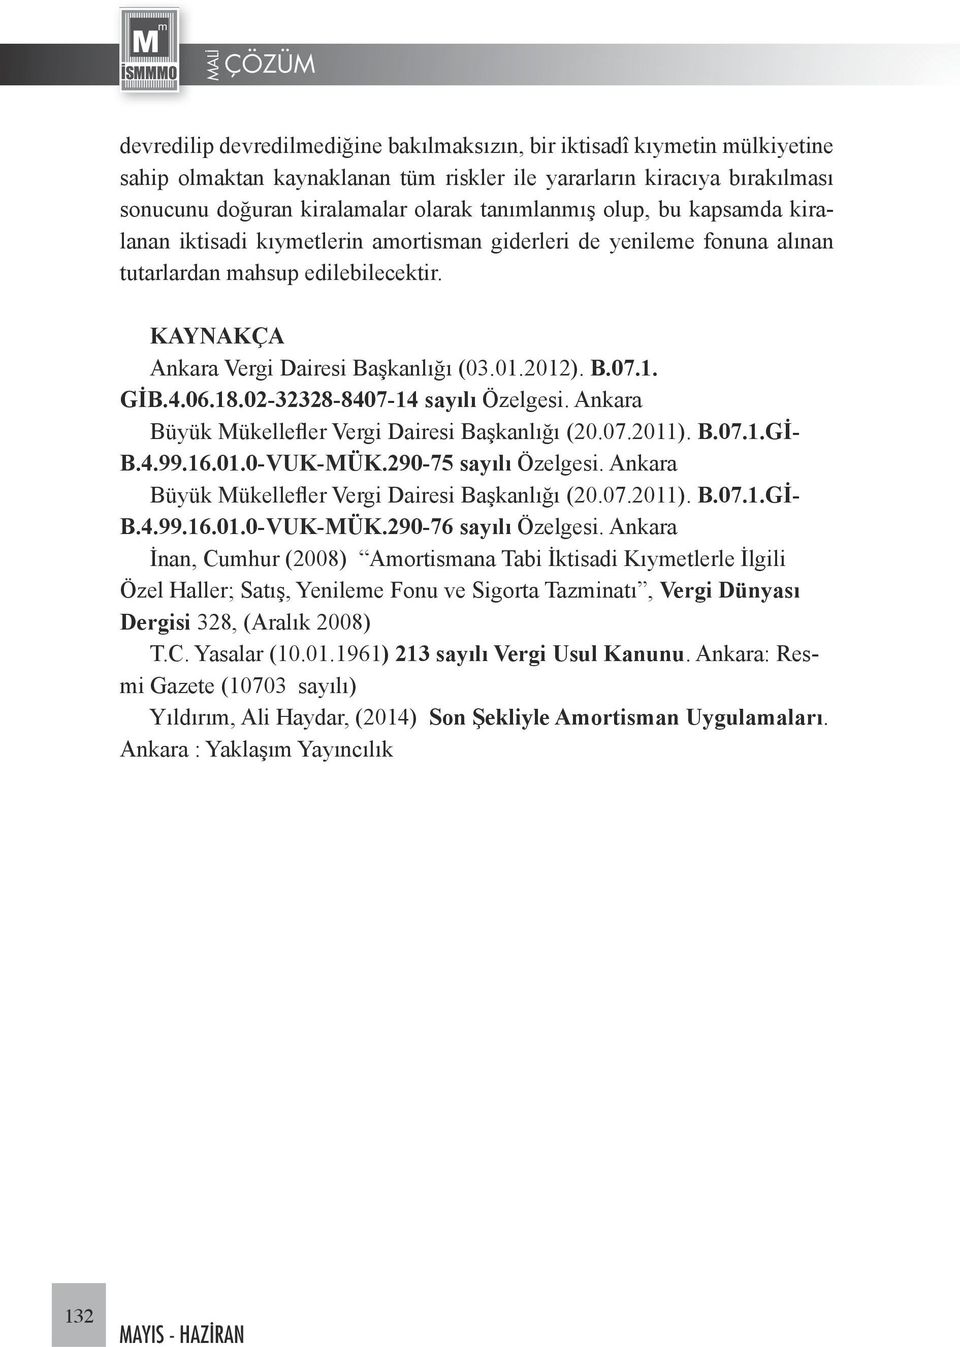 4.06.18.02-32328-8407-14 sayılı Özelgesi. Ankara Büyük Mükellefler Vergi Dairesi Başkanlığı (20.07.2011). B.07.1.Gİ- B.4.99.16.01.0-VUK-MÜK.290-75 sayılı Özelgesi.